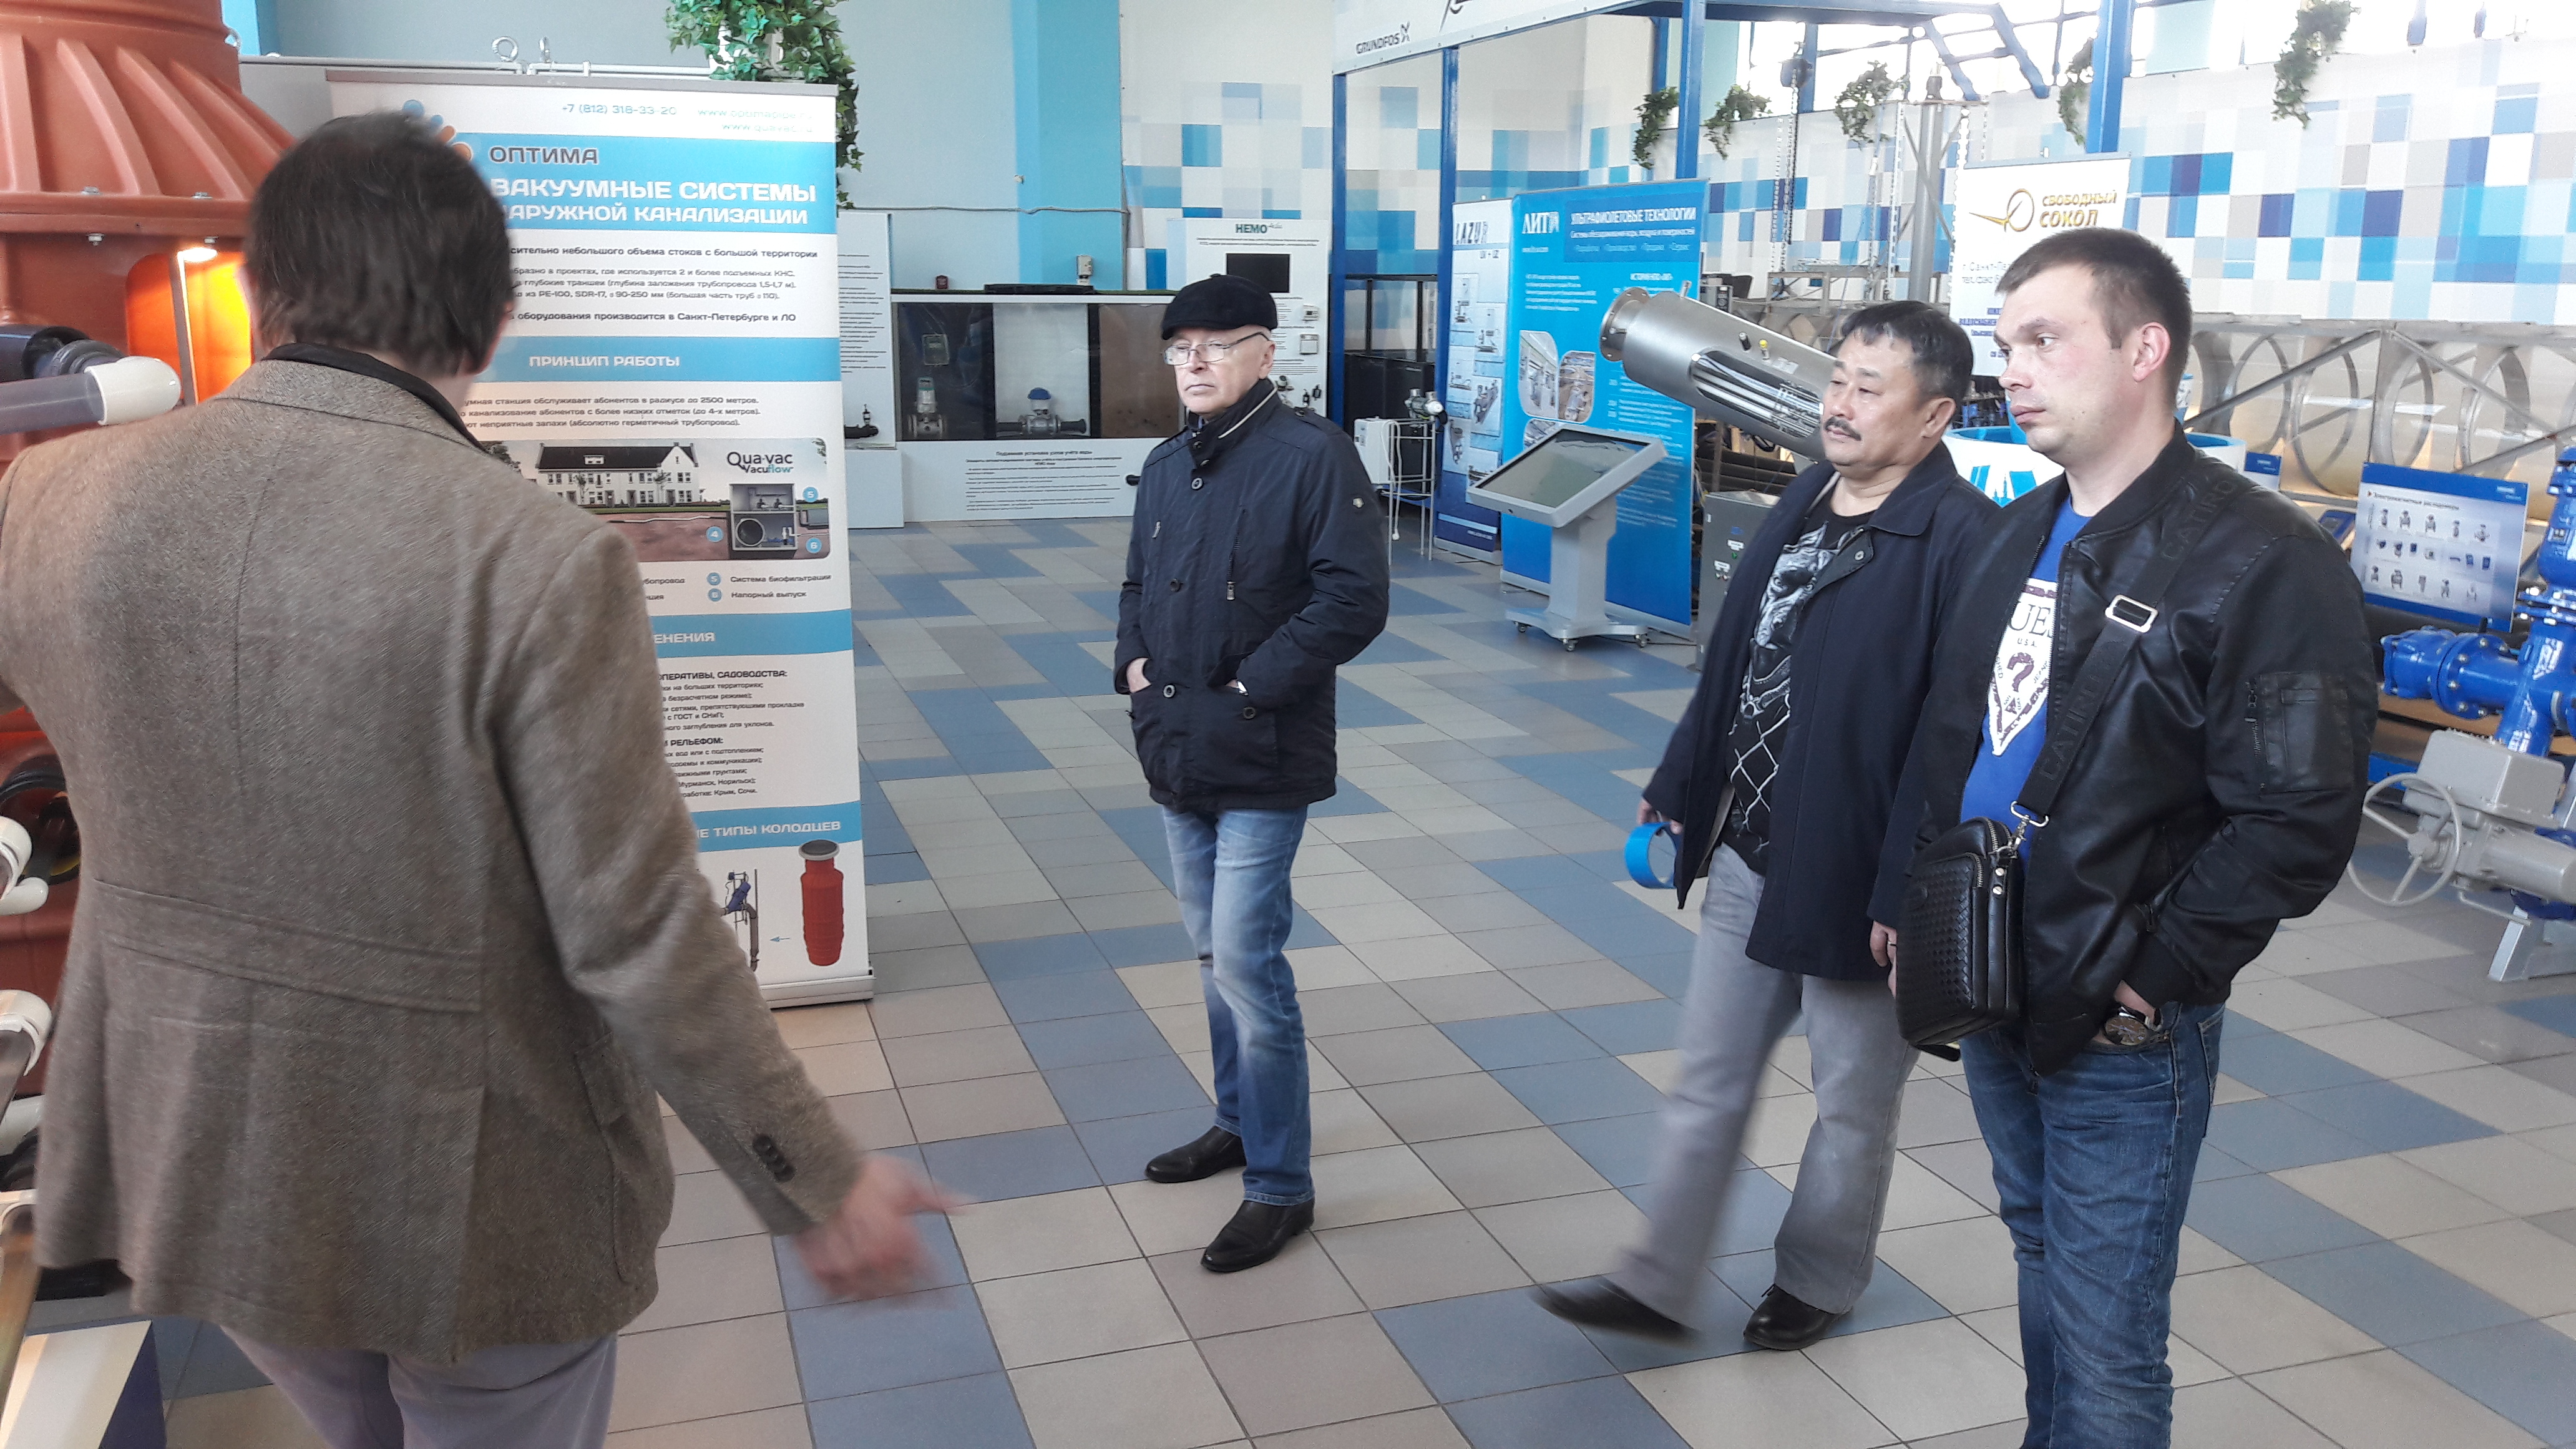 Посещение экспозиции ДВЦ представителями ОАО "Всеволожские тепловые сети"